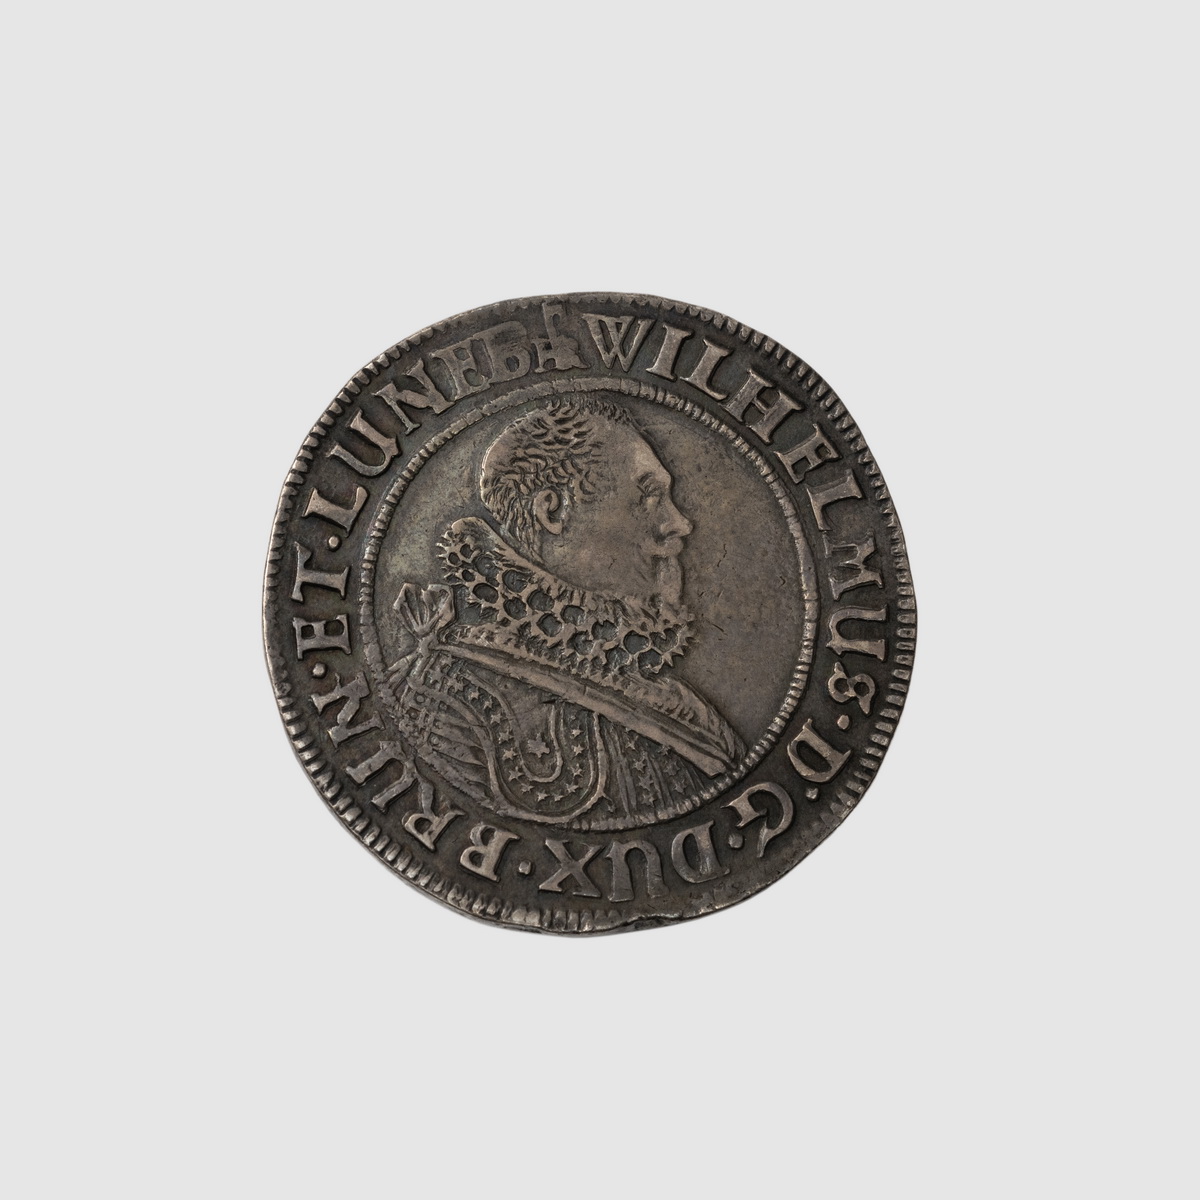 Münze geprägt mit Profil-Konterfei von Wilhelm von Harburg